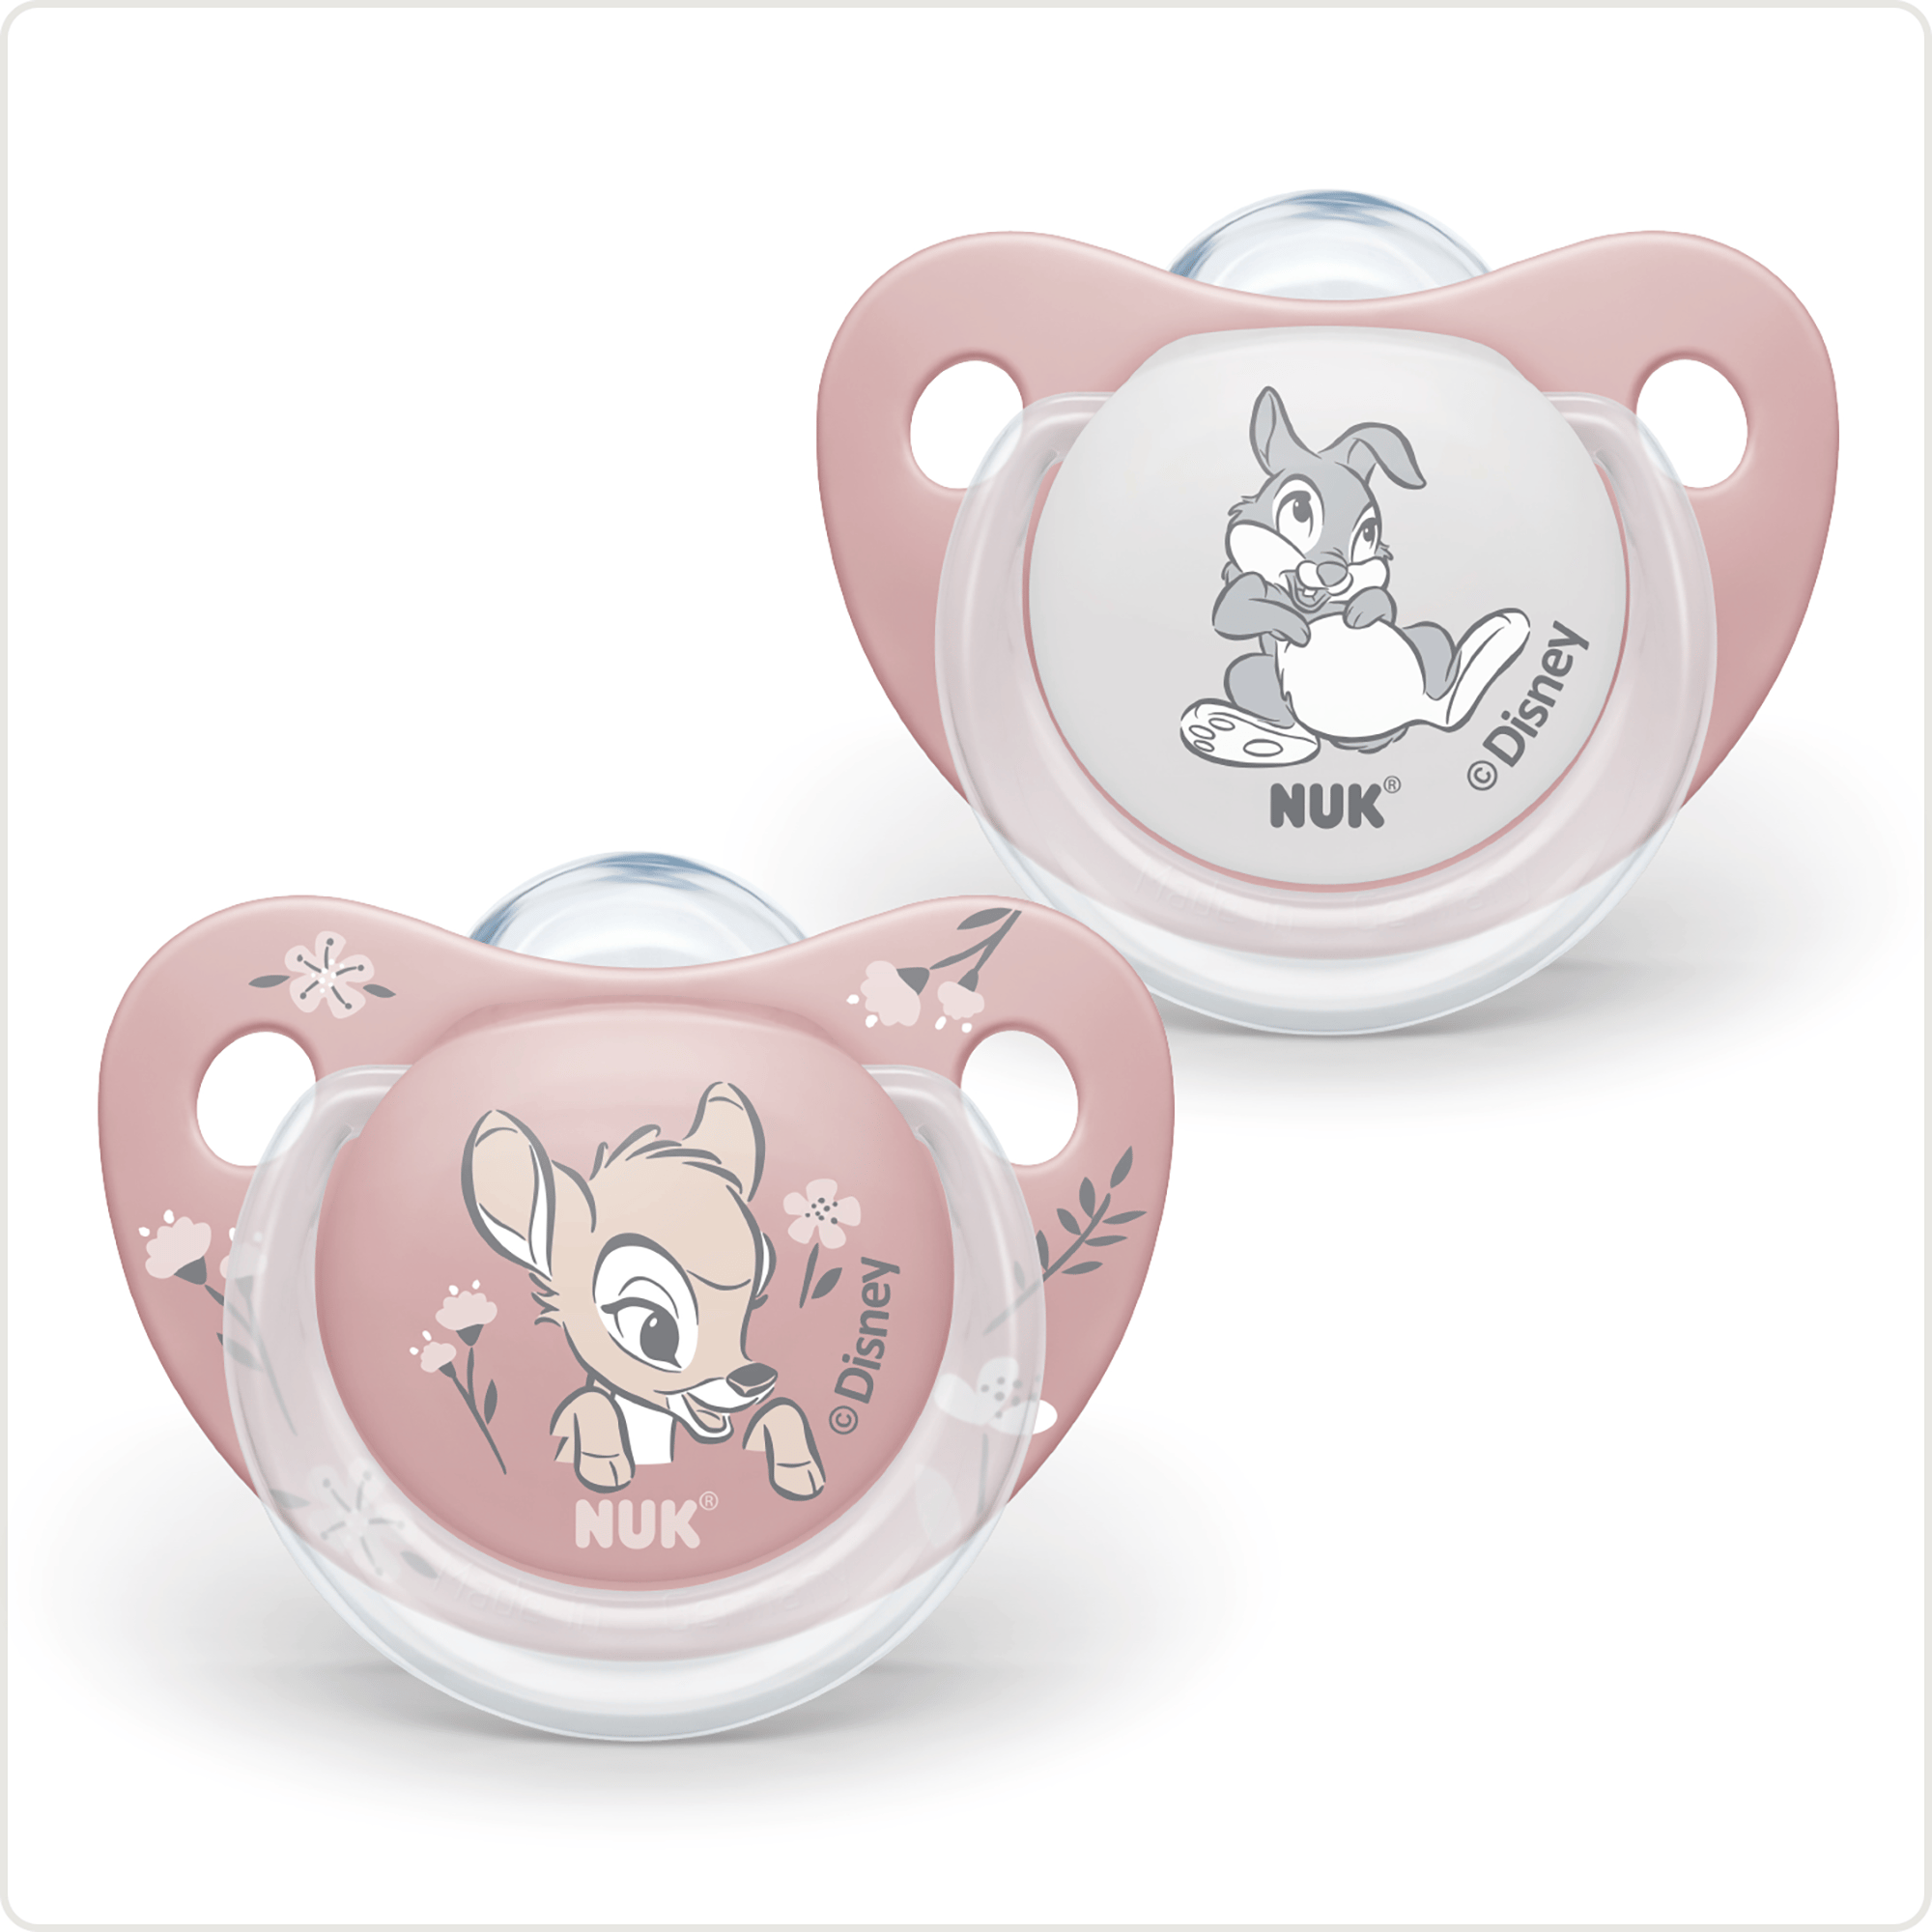 Beruhigungssauger Disney Bambi 0 - 6 Monate NUK Pink Rosa 2000583057307 1